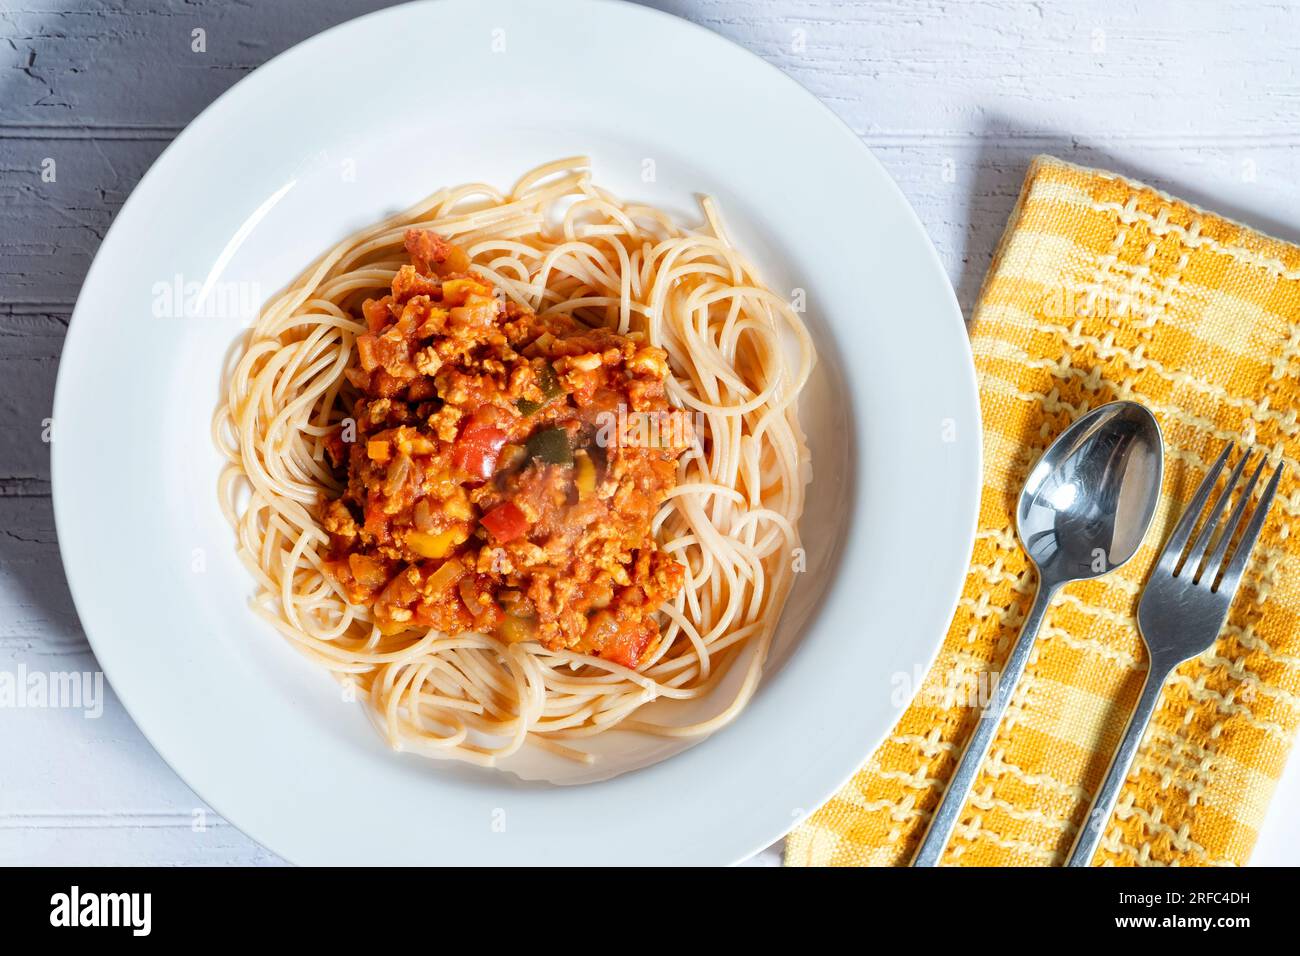 Eine Schüssel Ragu Bolognaise, serviert auf einem Bett mit Spaghetti. Eine Portion wird auf einen Tisch in einer tiefen weißen Schüssel gestellt Stockfoto